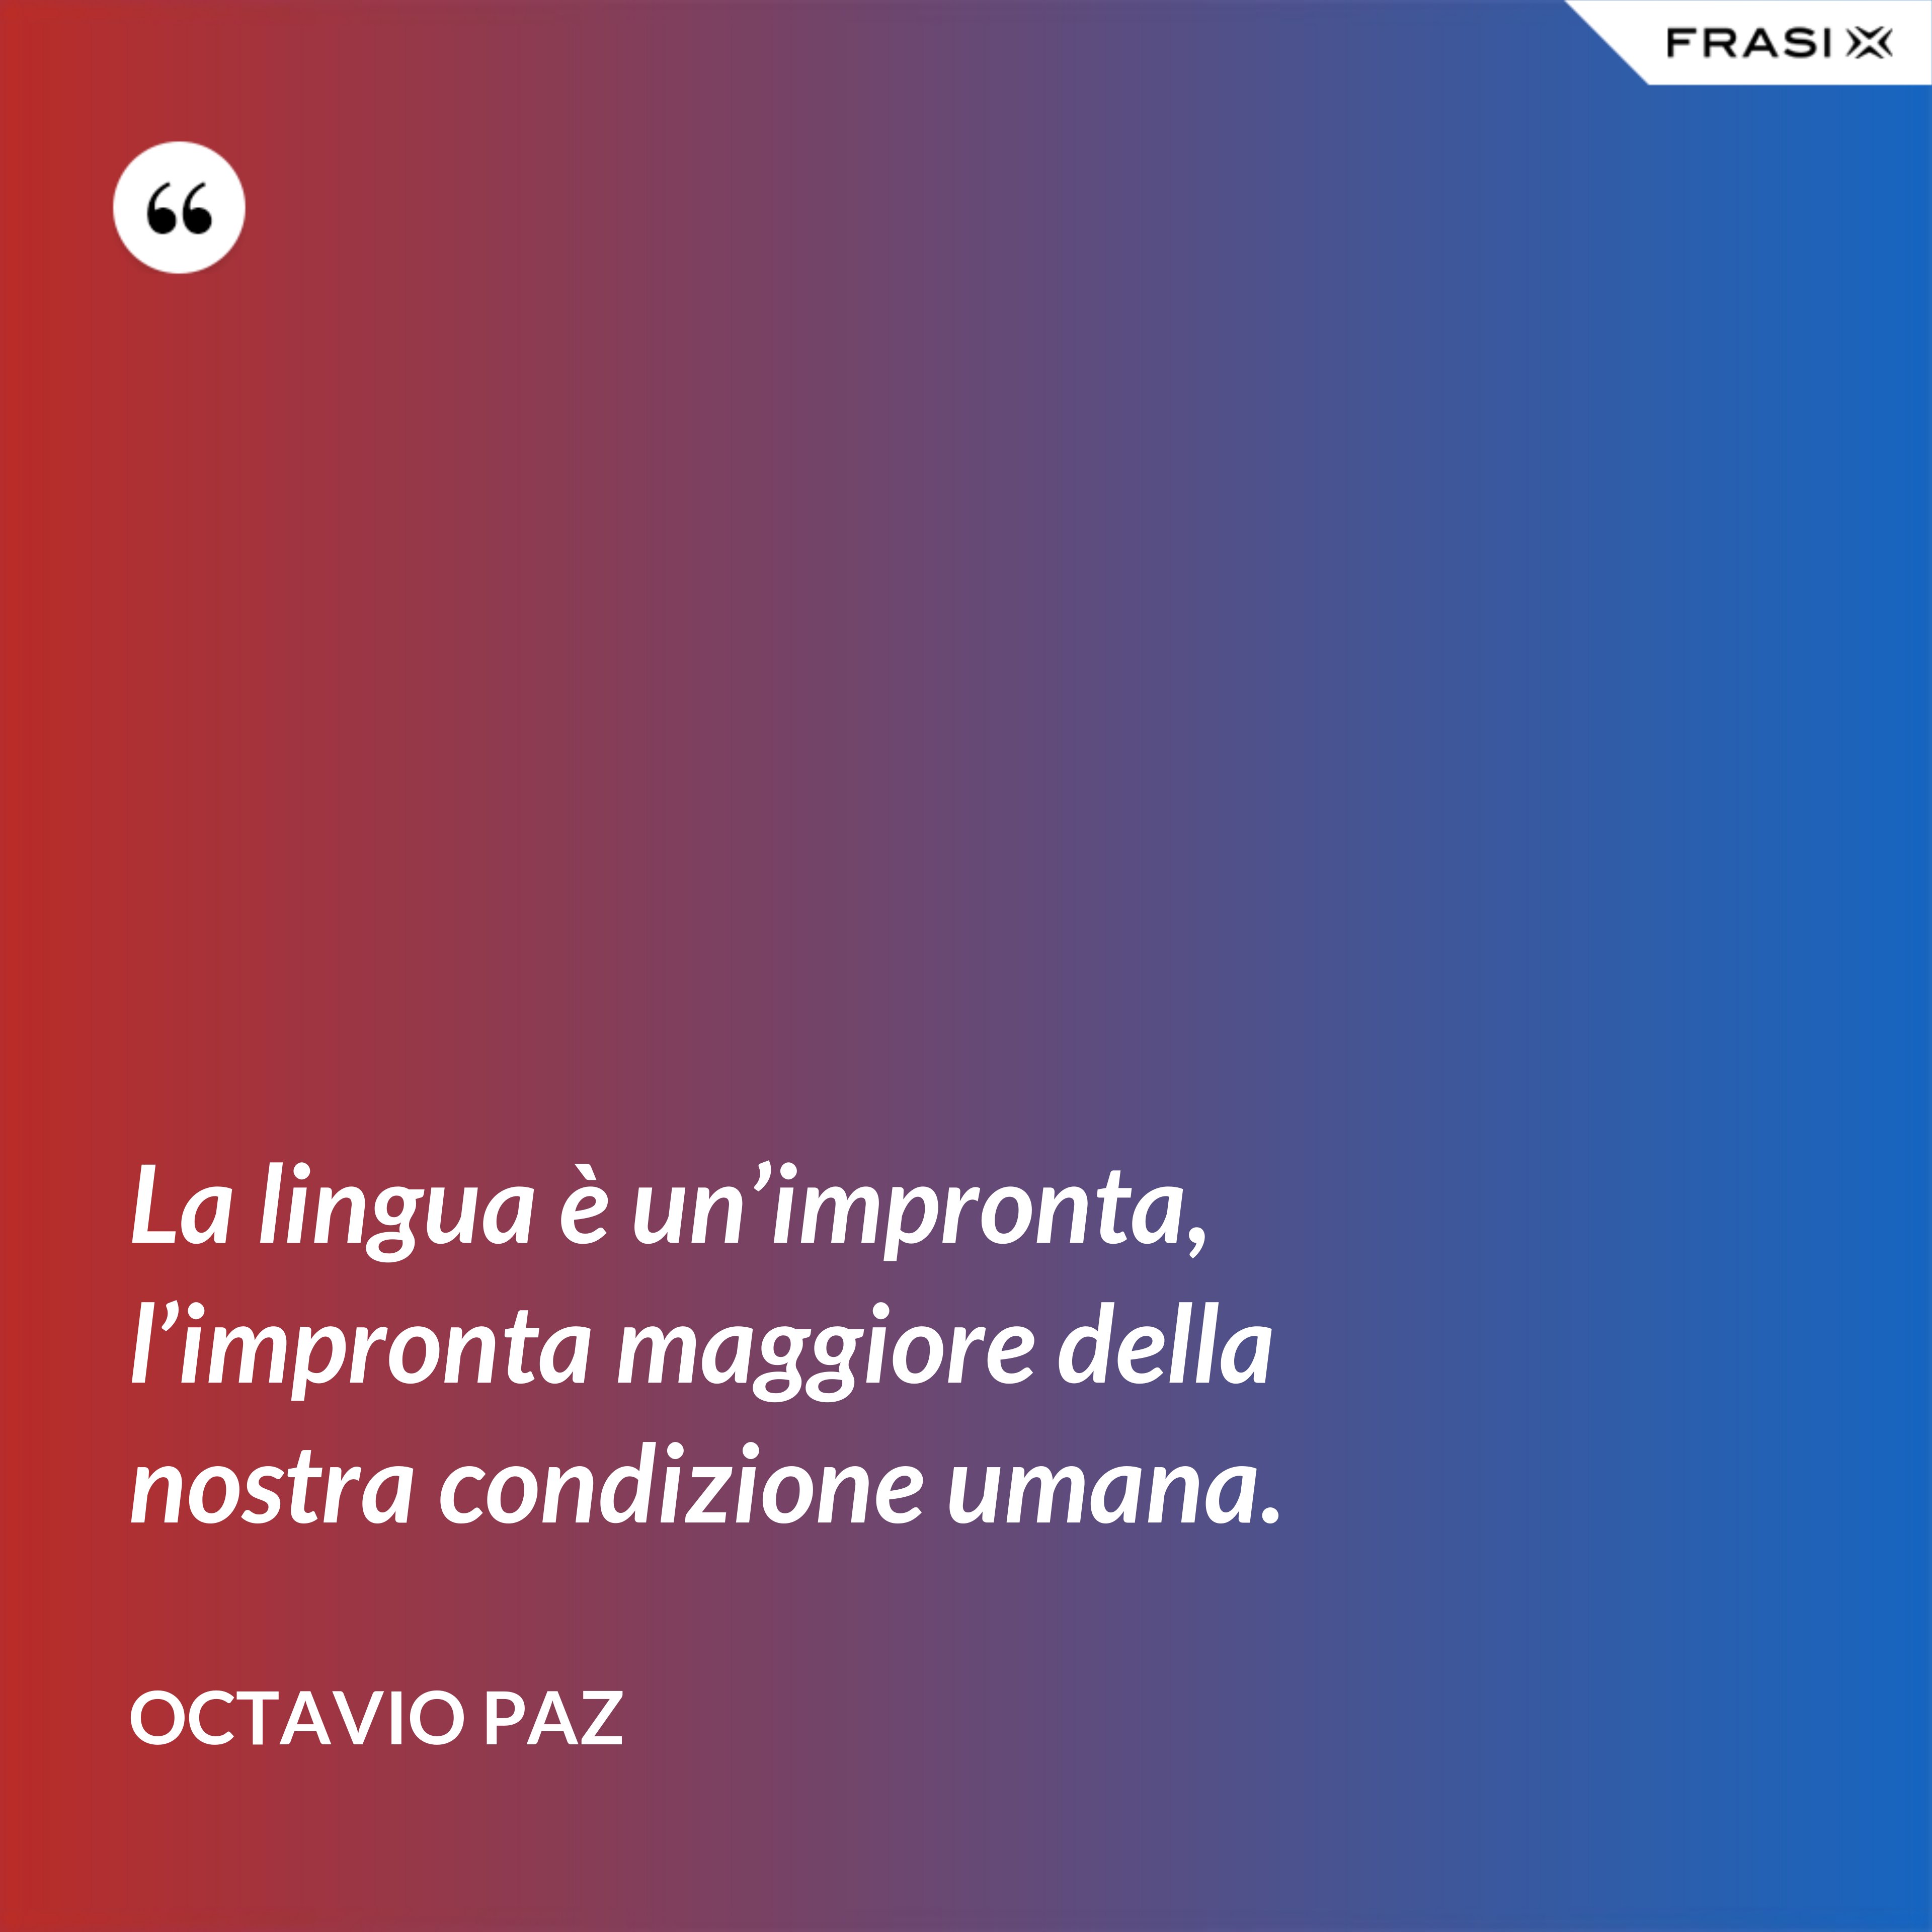 La lingua è un’impronta, l’impronta maggiore della nostra condizione umana. - Octavio Paz